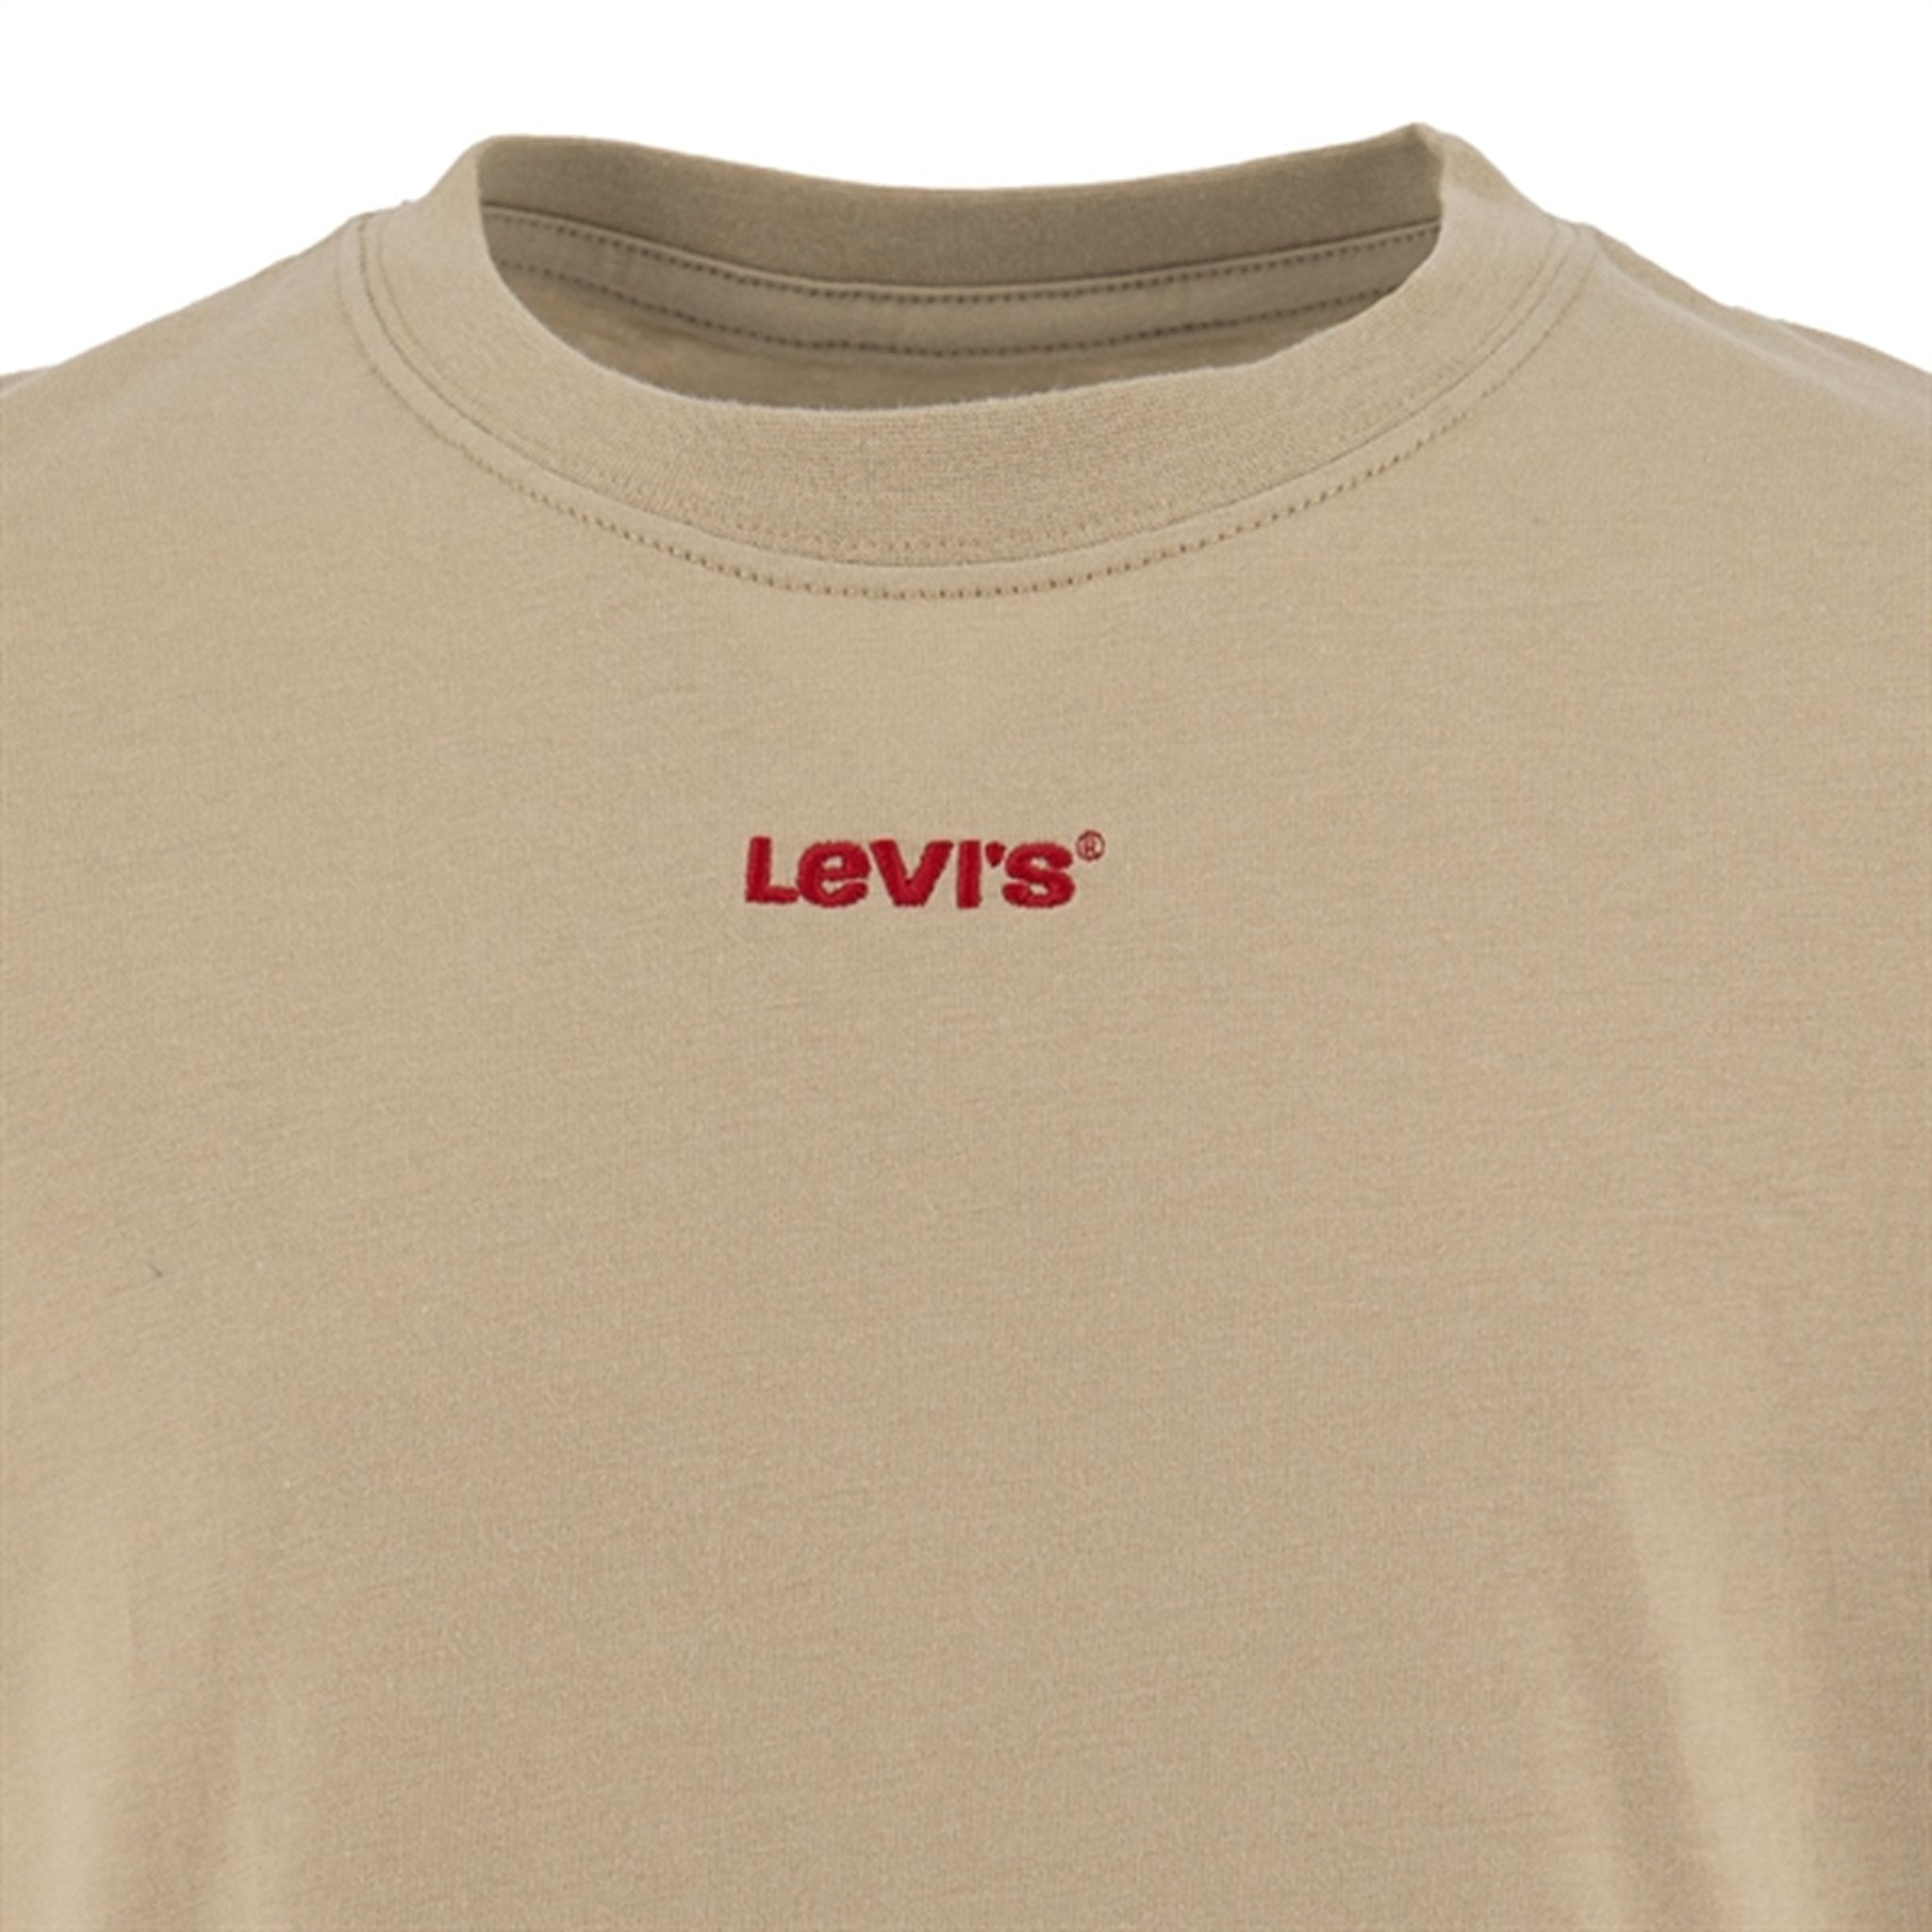 Levi's My Favorite T-Shirt Rusty Aluminum 2